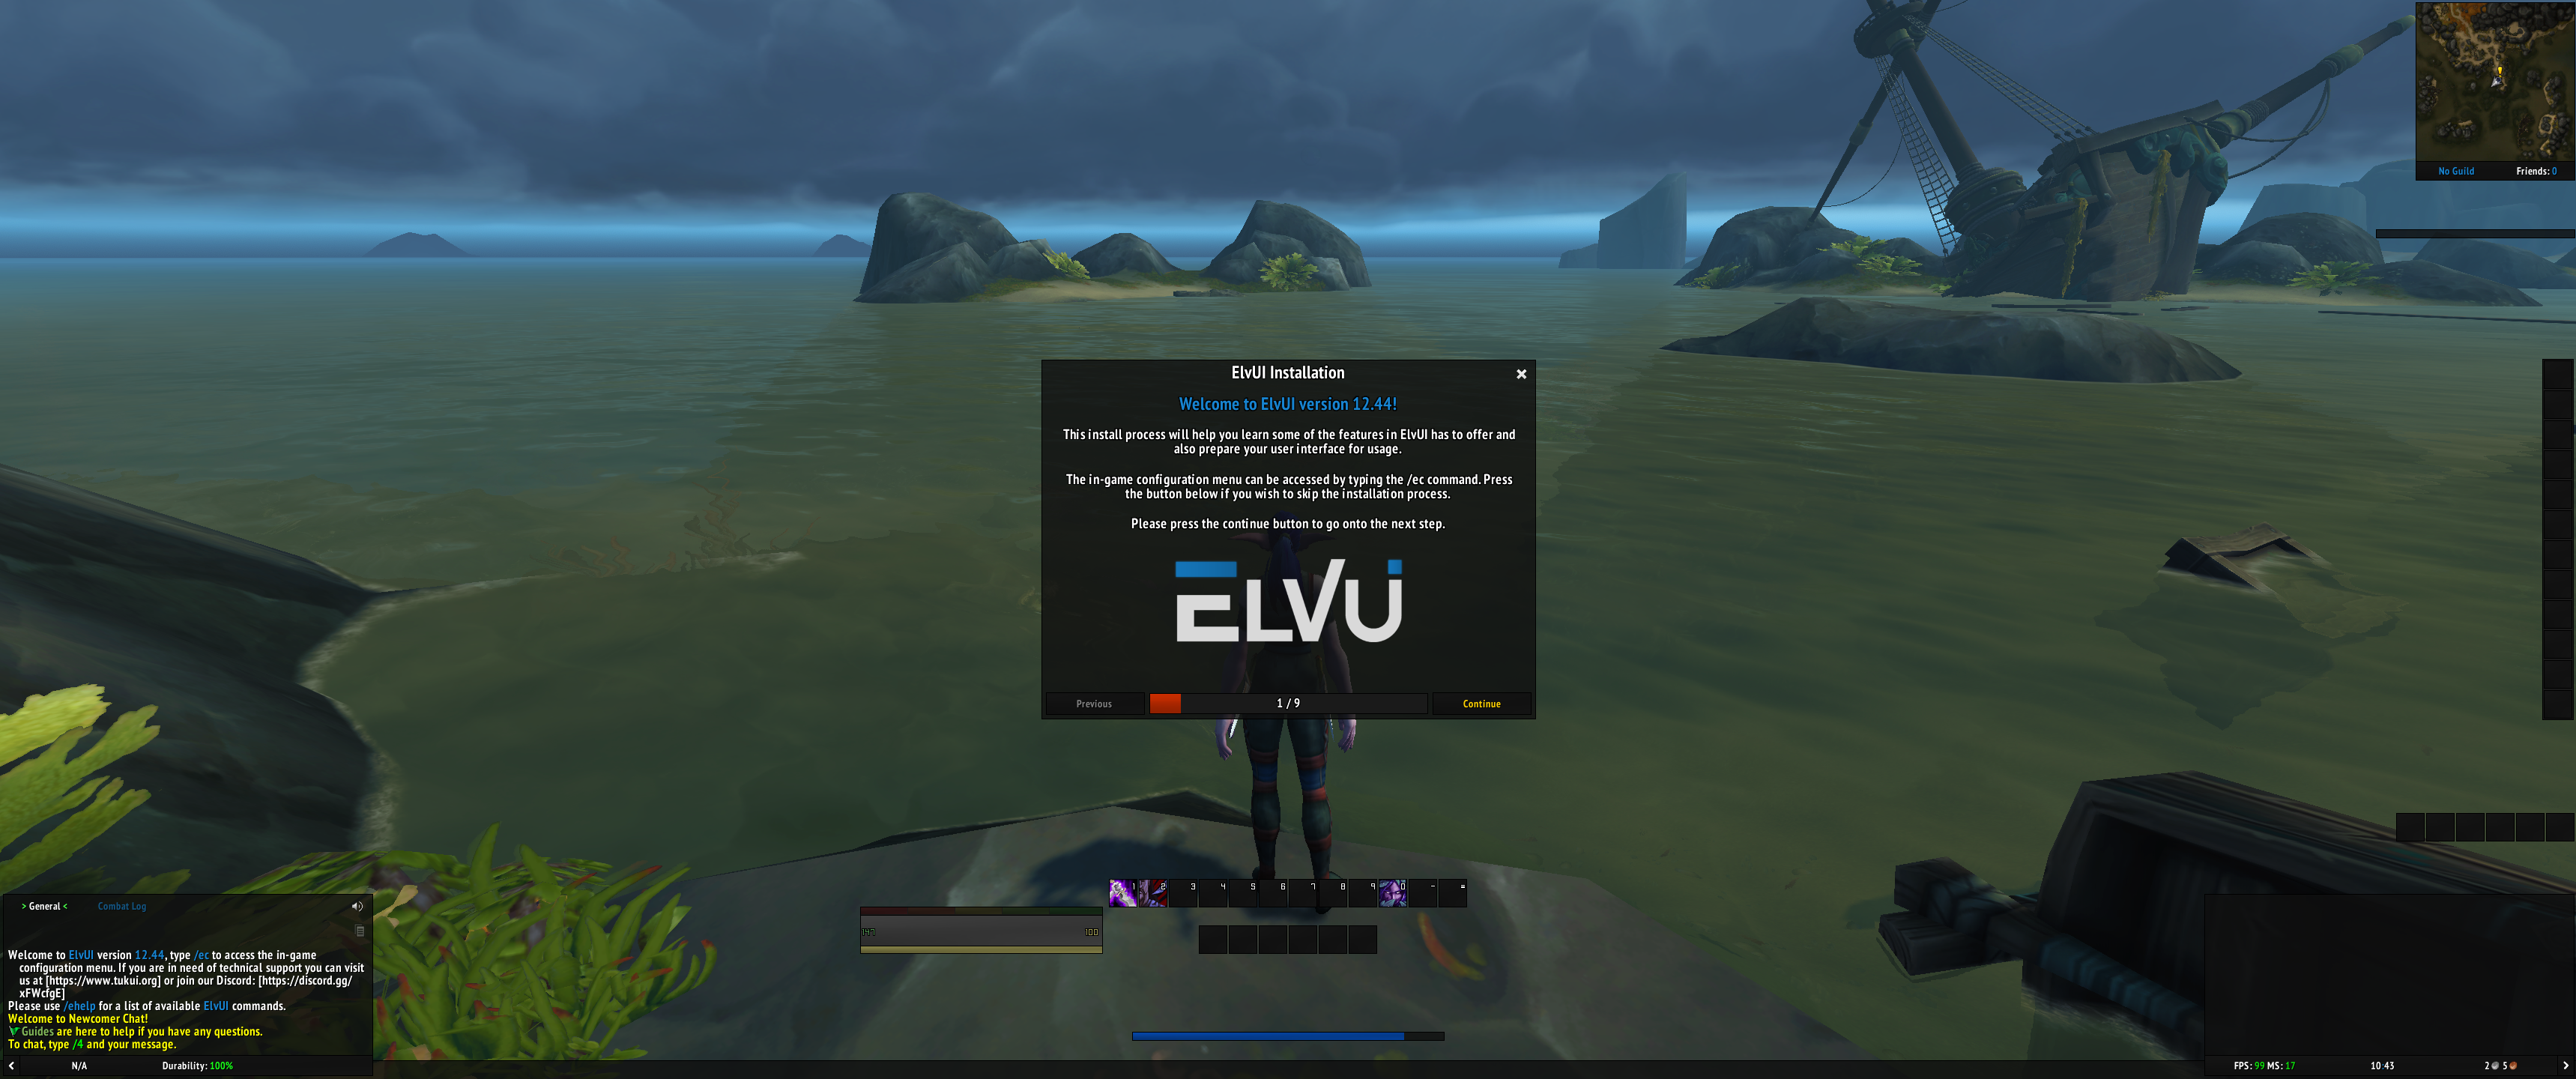 elvui-Installationsbildschirm in world of Warcraft